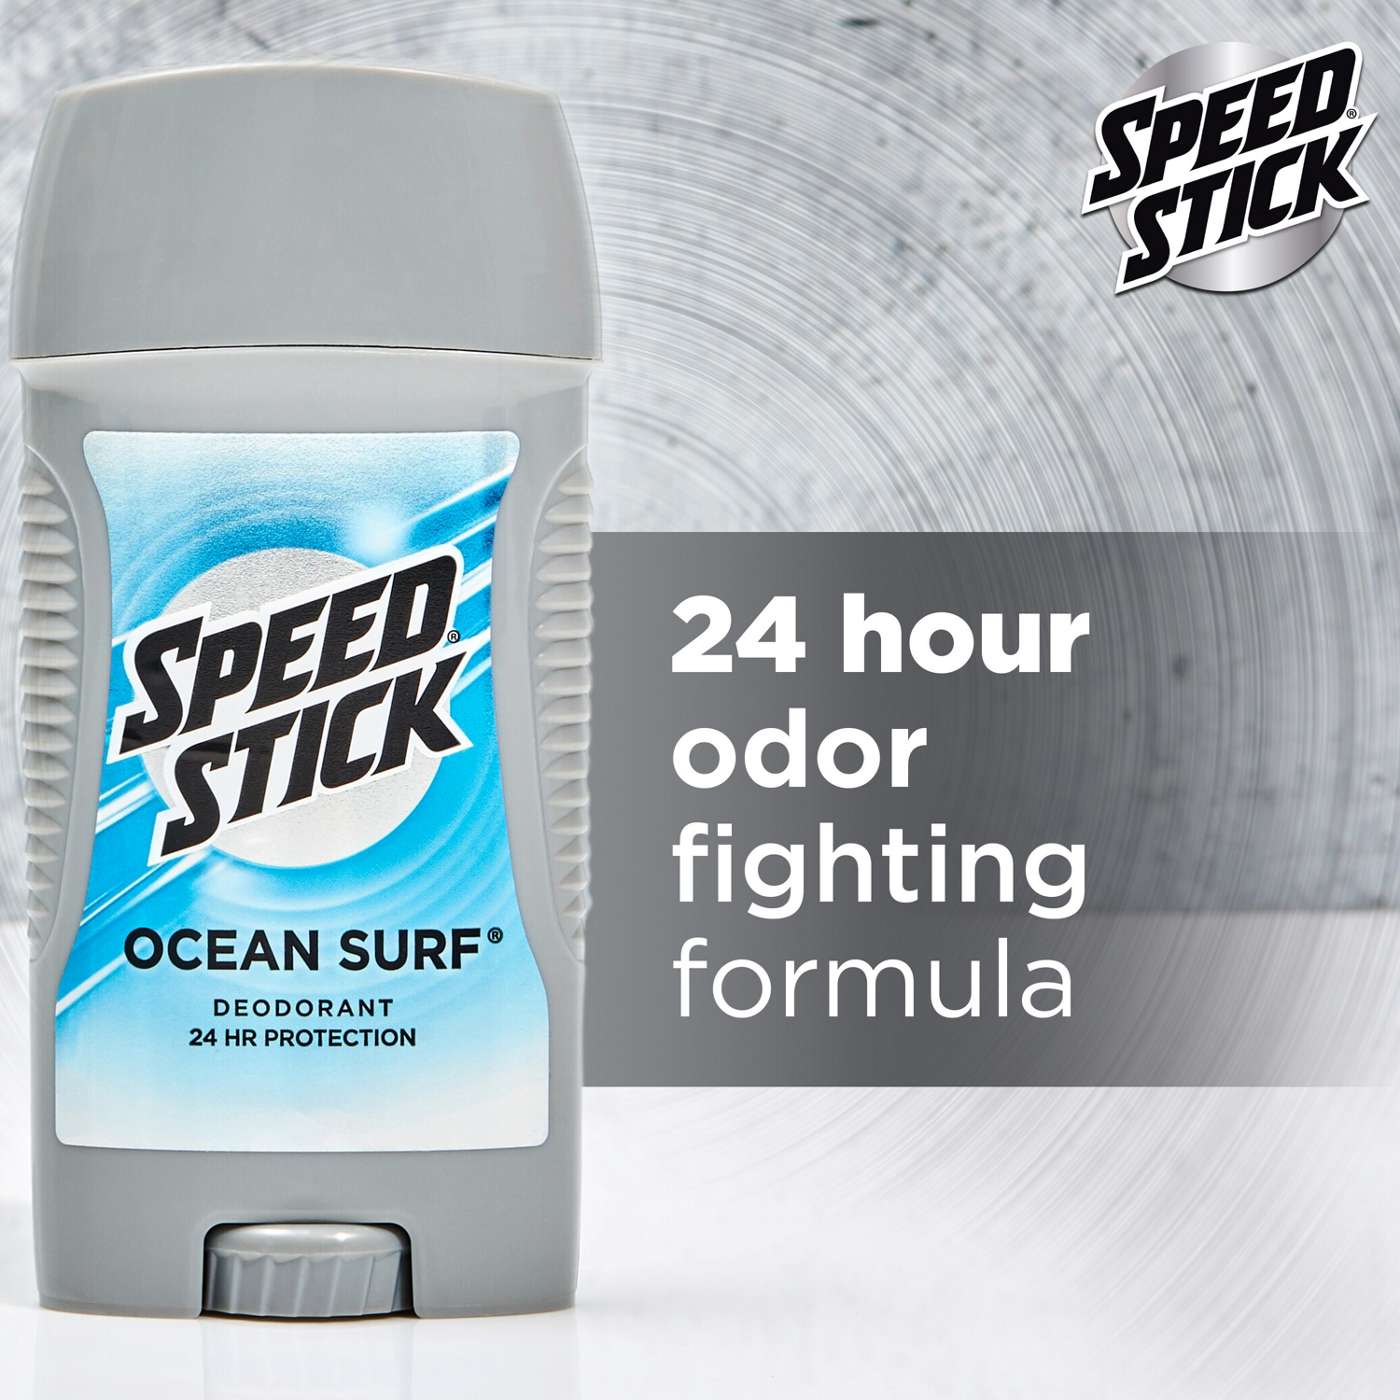 Speed Stick Ocean Surf Deodorant; image 7 of 10